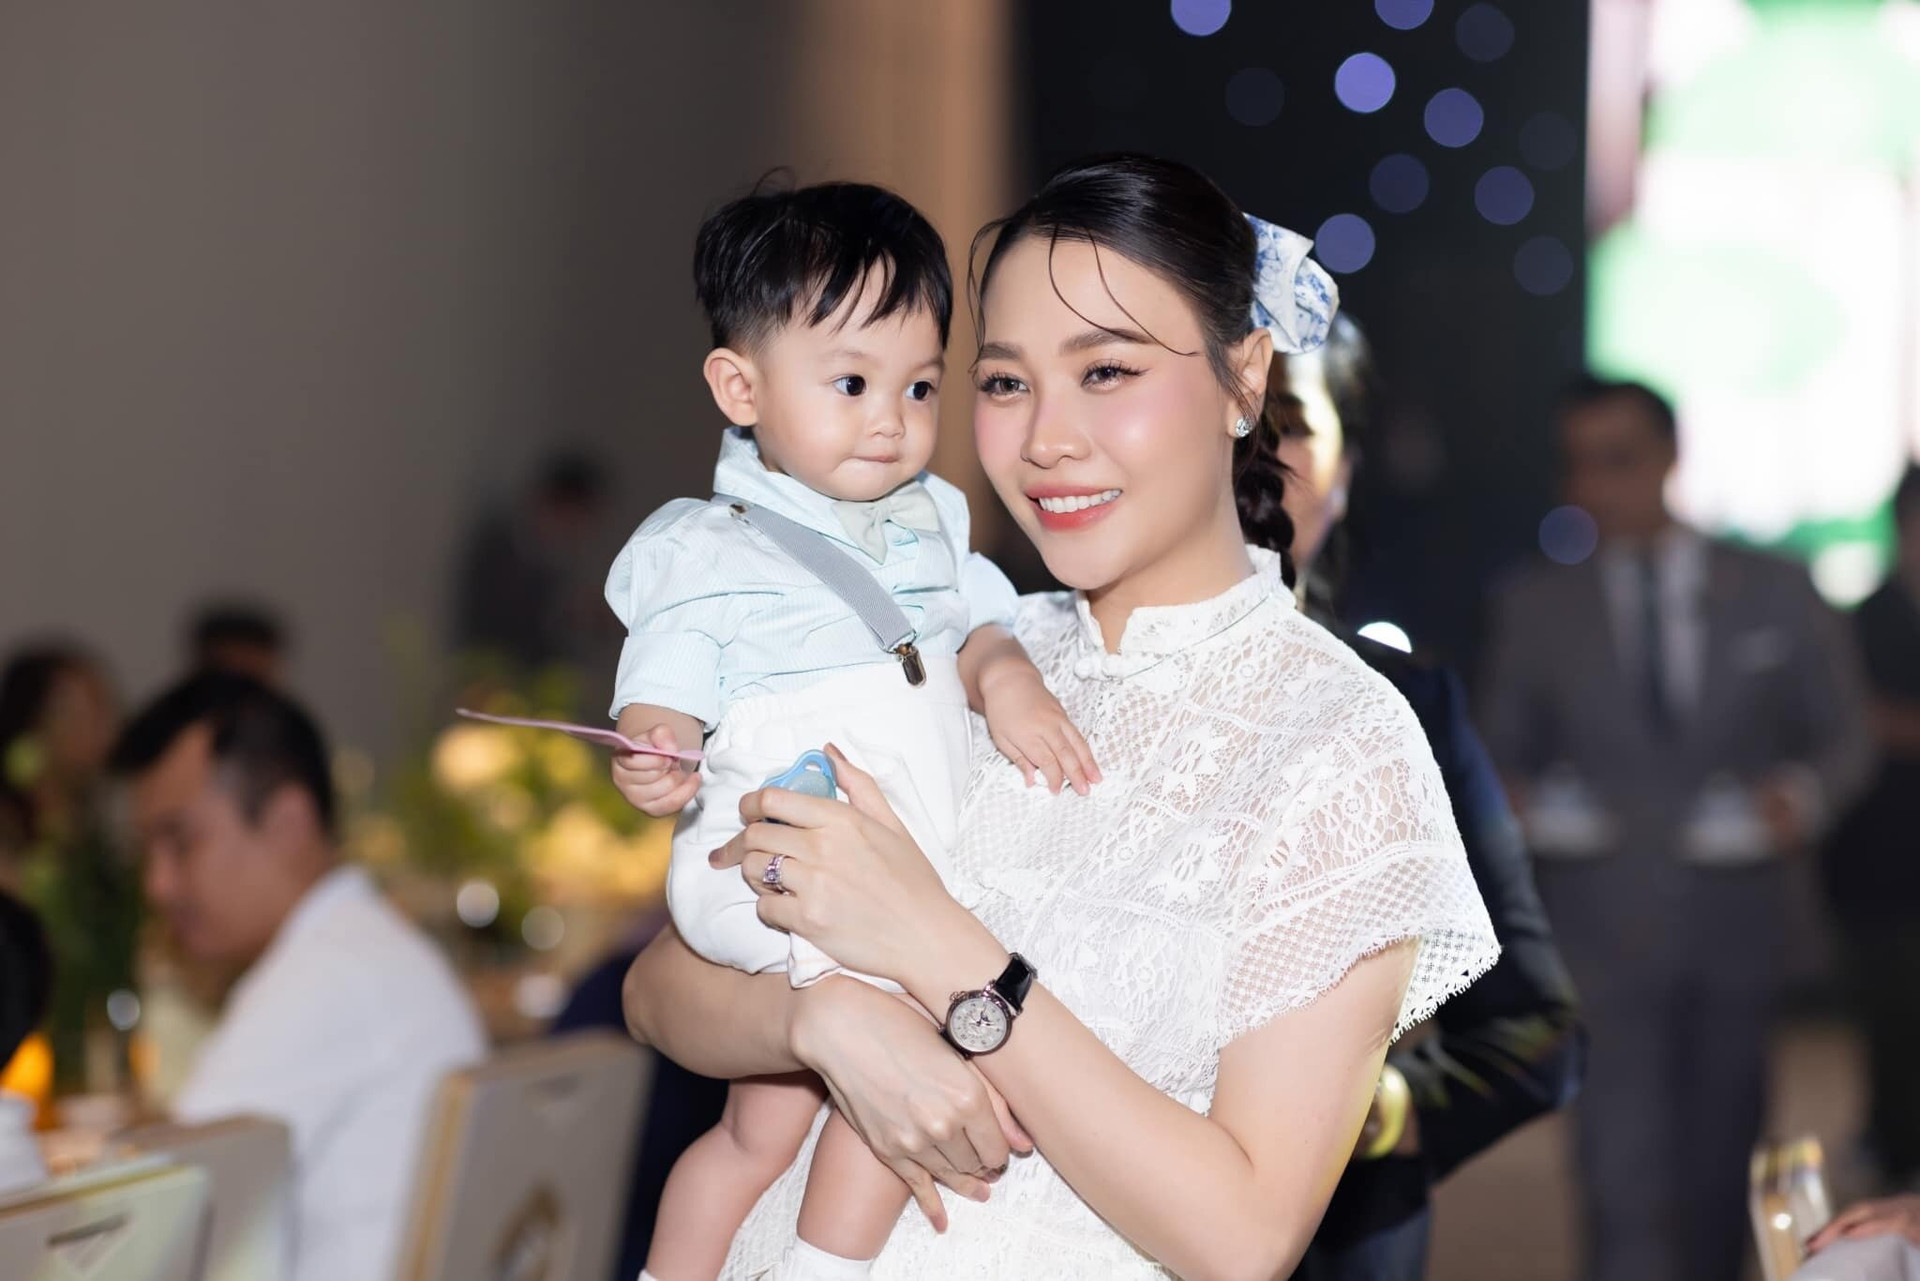 Bé Sutin - con trai Đàm Thu Trang và Cường Đô La vừa được bố mẹ tổ chức sinh nhật tròn 1 tuổi hoành tráng. Cặp đôi muốn cùng con tạo nên những kỷ niệm đáng nhớ nhất trong ngày sinh nhật đầu đời.